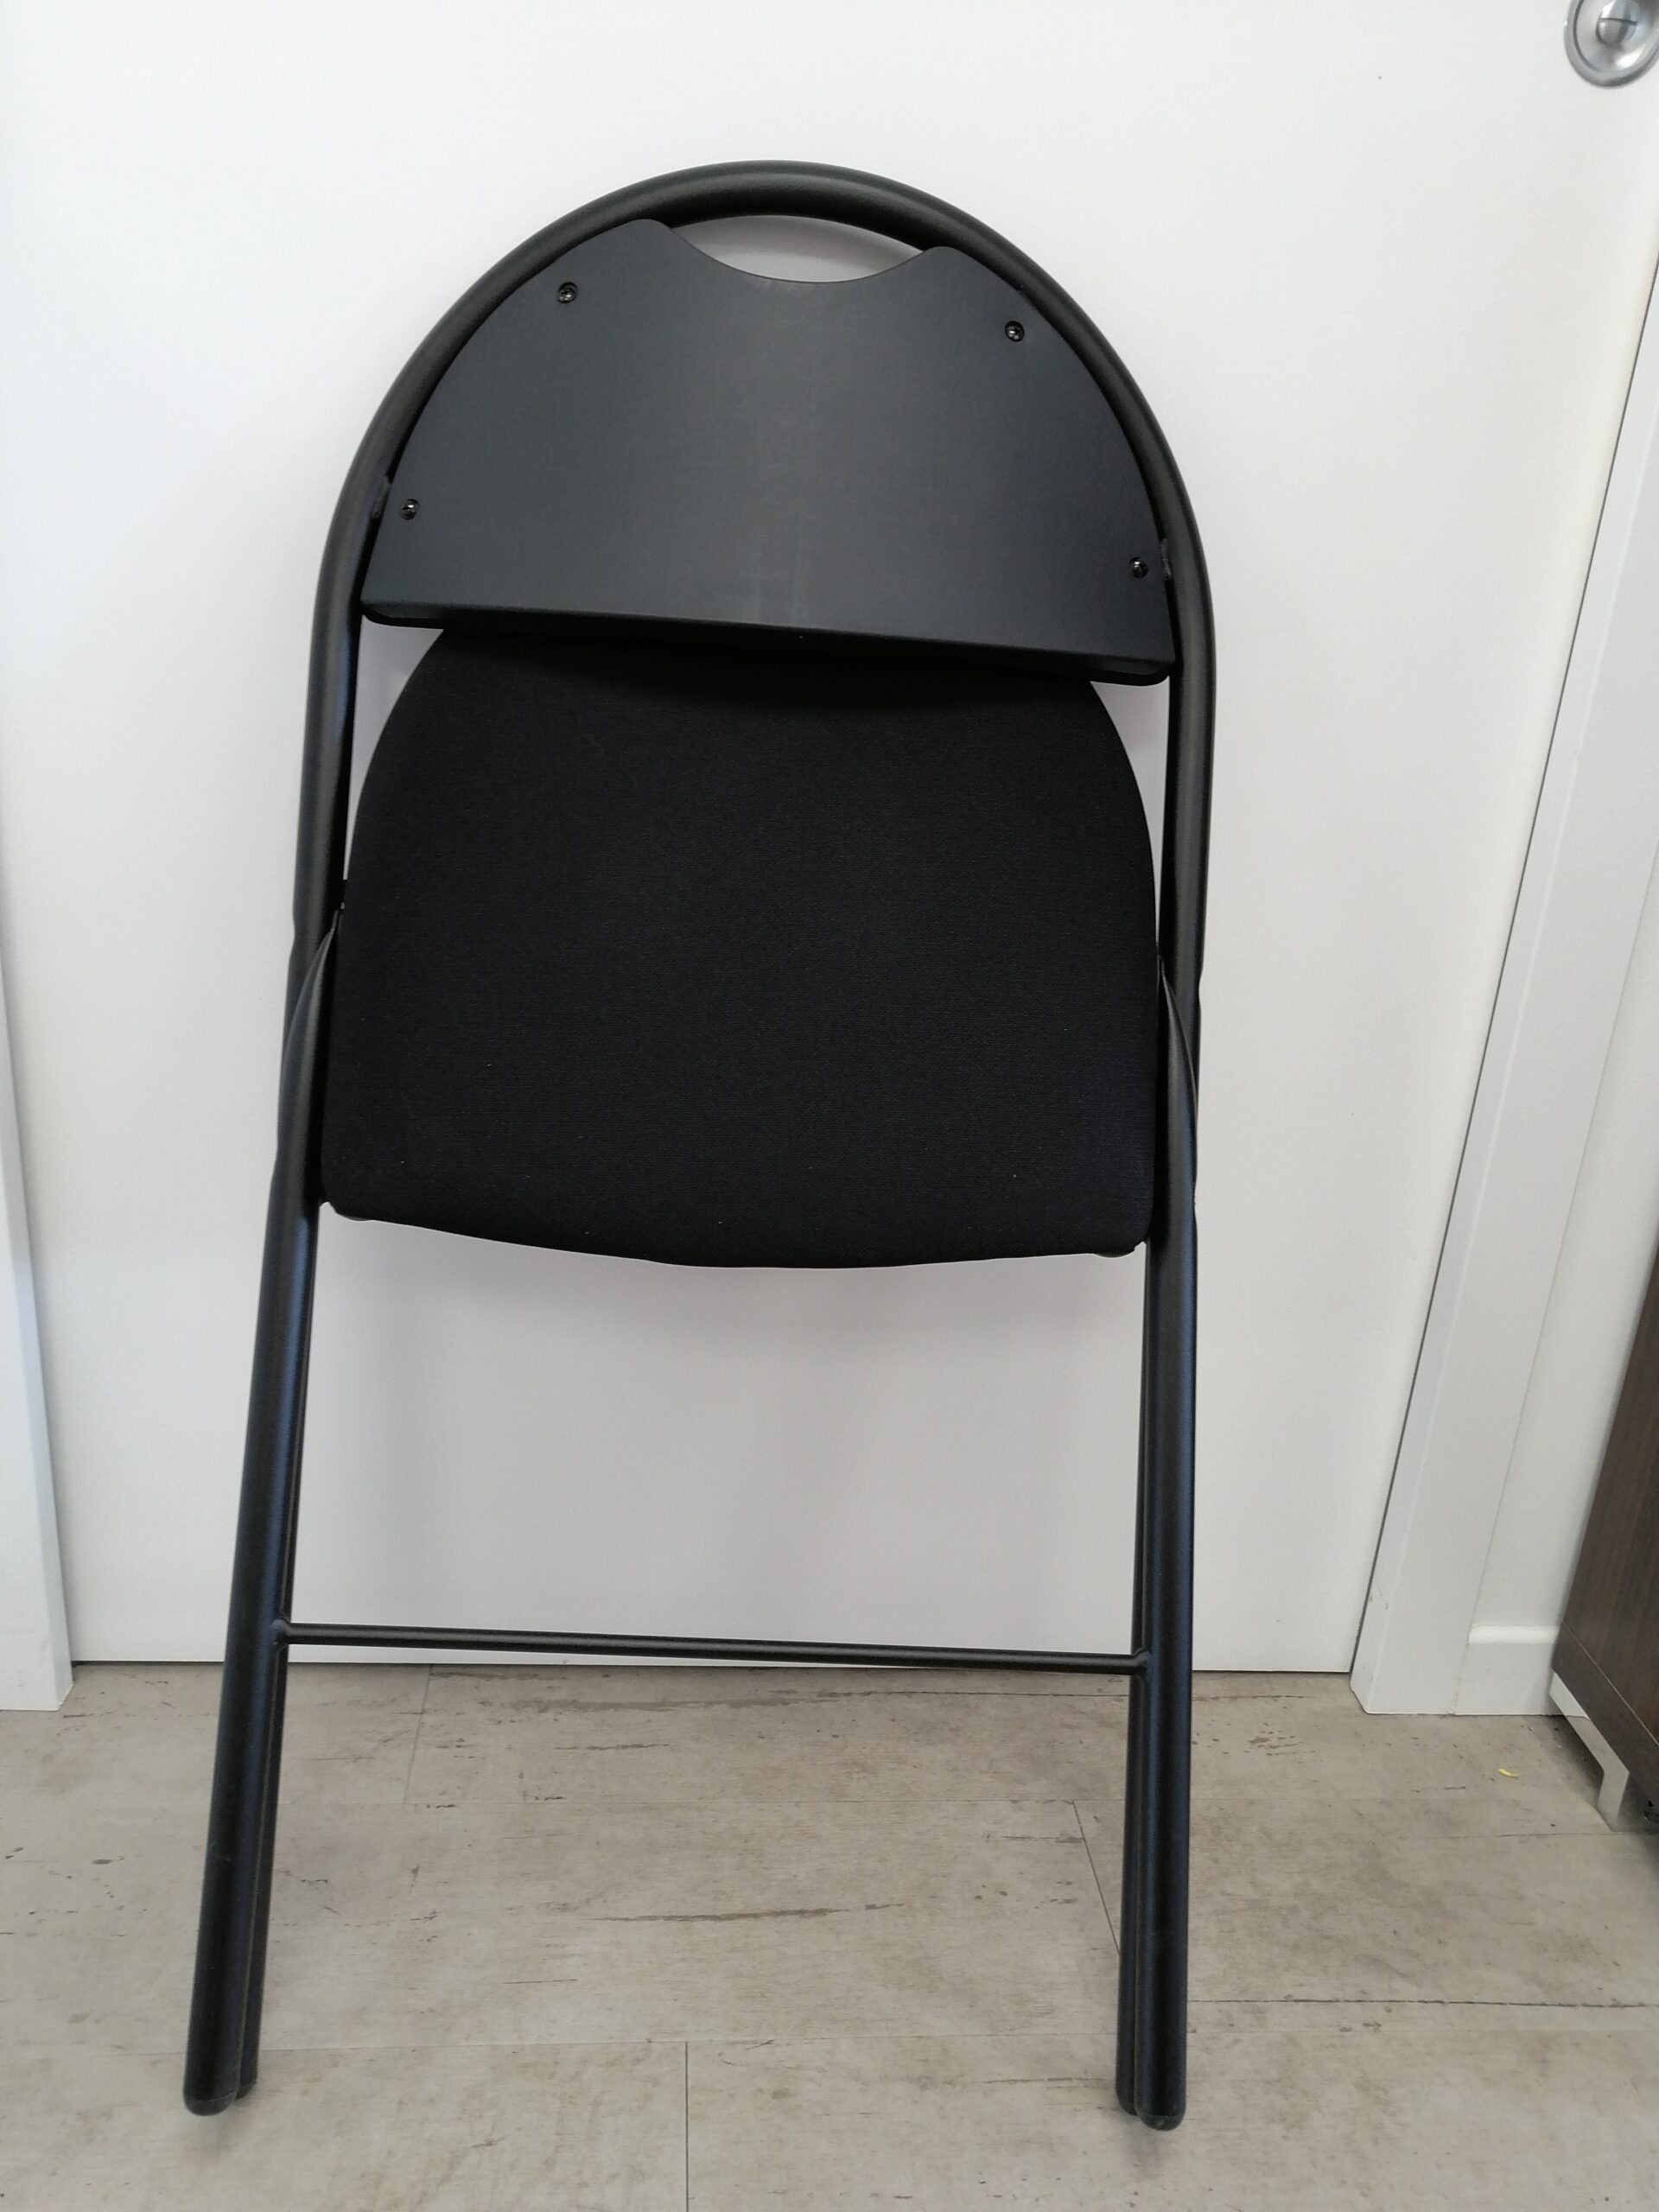 chaise-pliante-tissu-noir-destockage-neuf